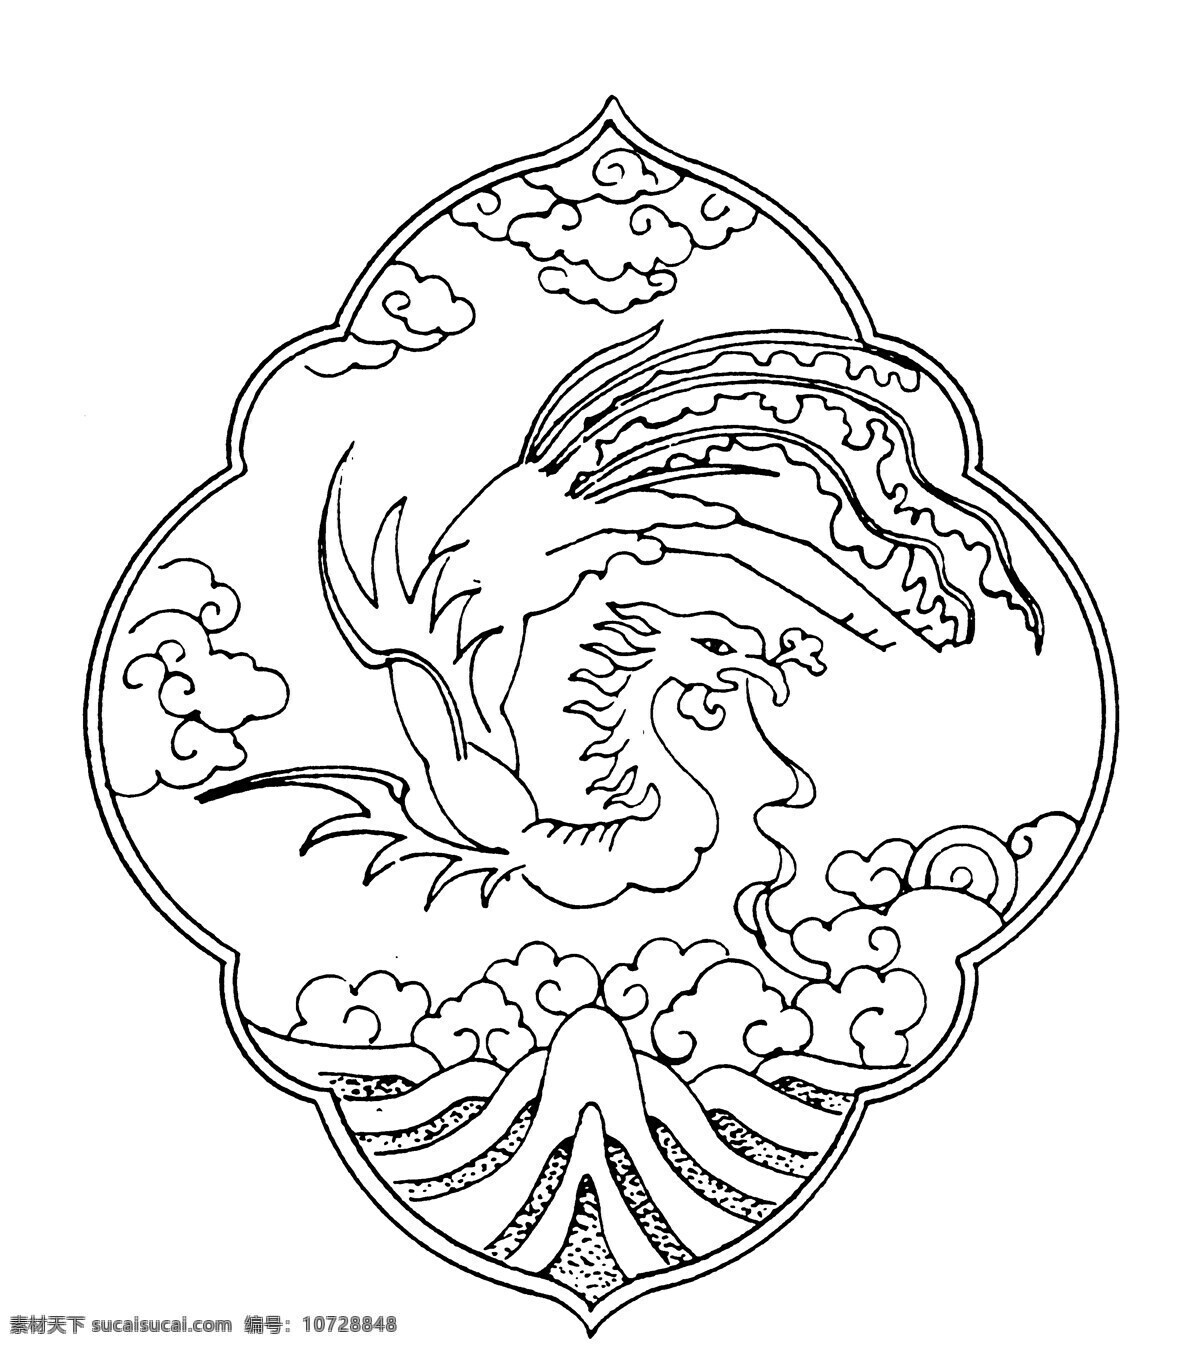 龙凤图案 清代图案 中国 传统 图案 设计素材 龙凤图纹 装饰图案 书画美术 白色